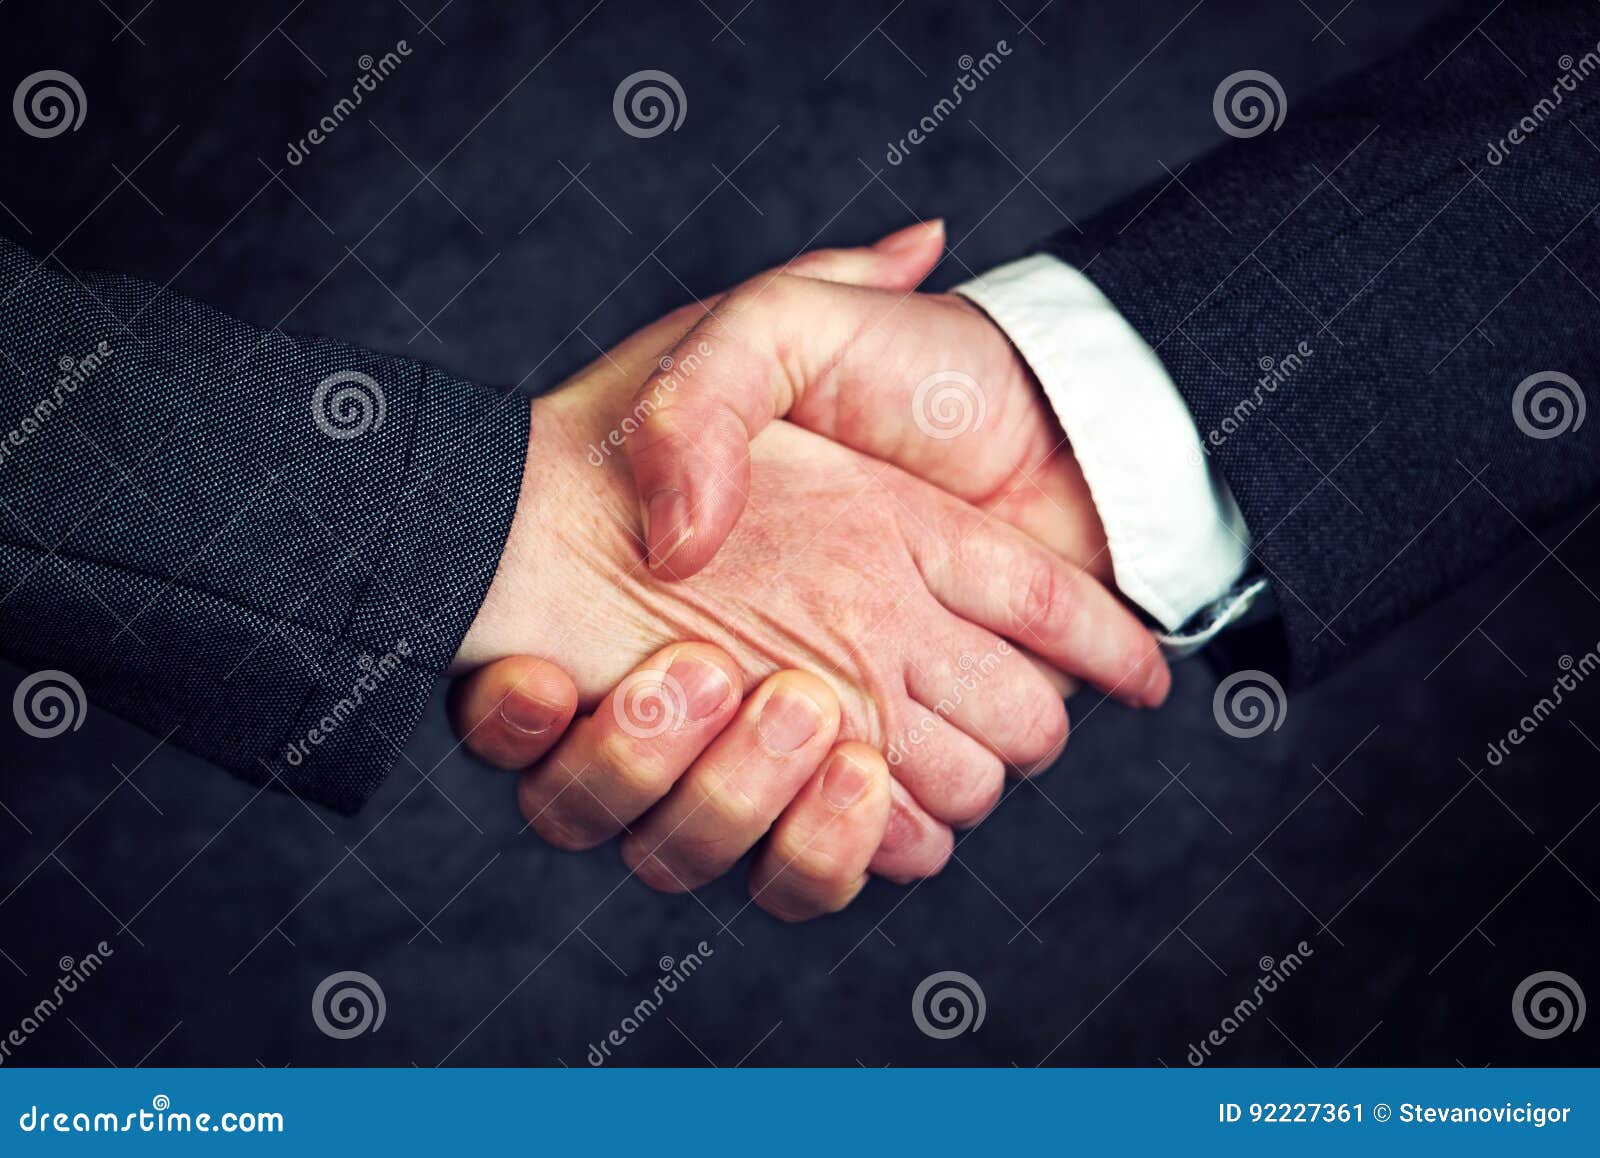 joint enterprise handshake over business agreement